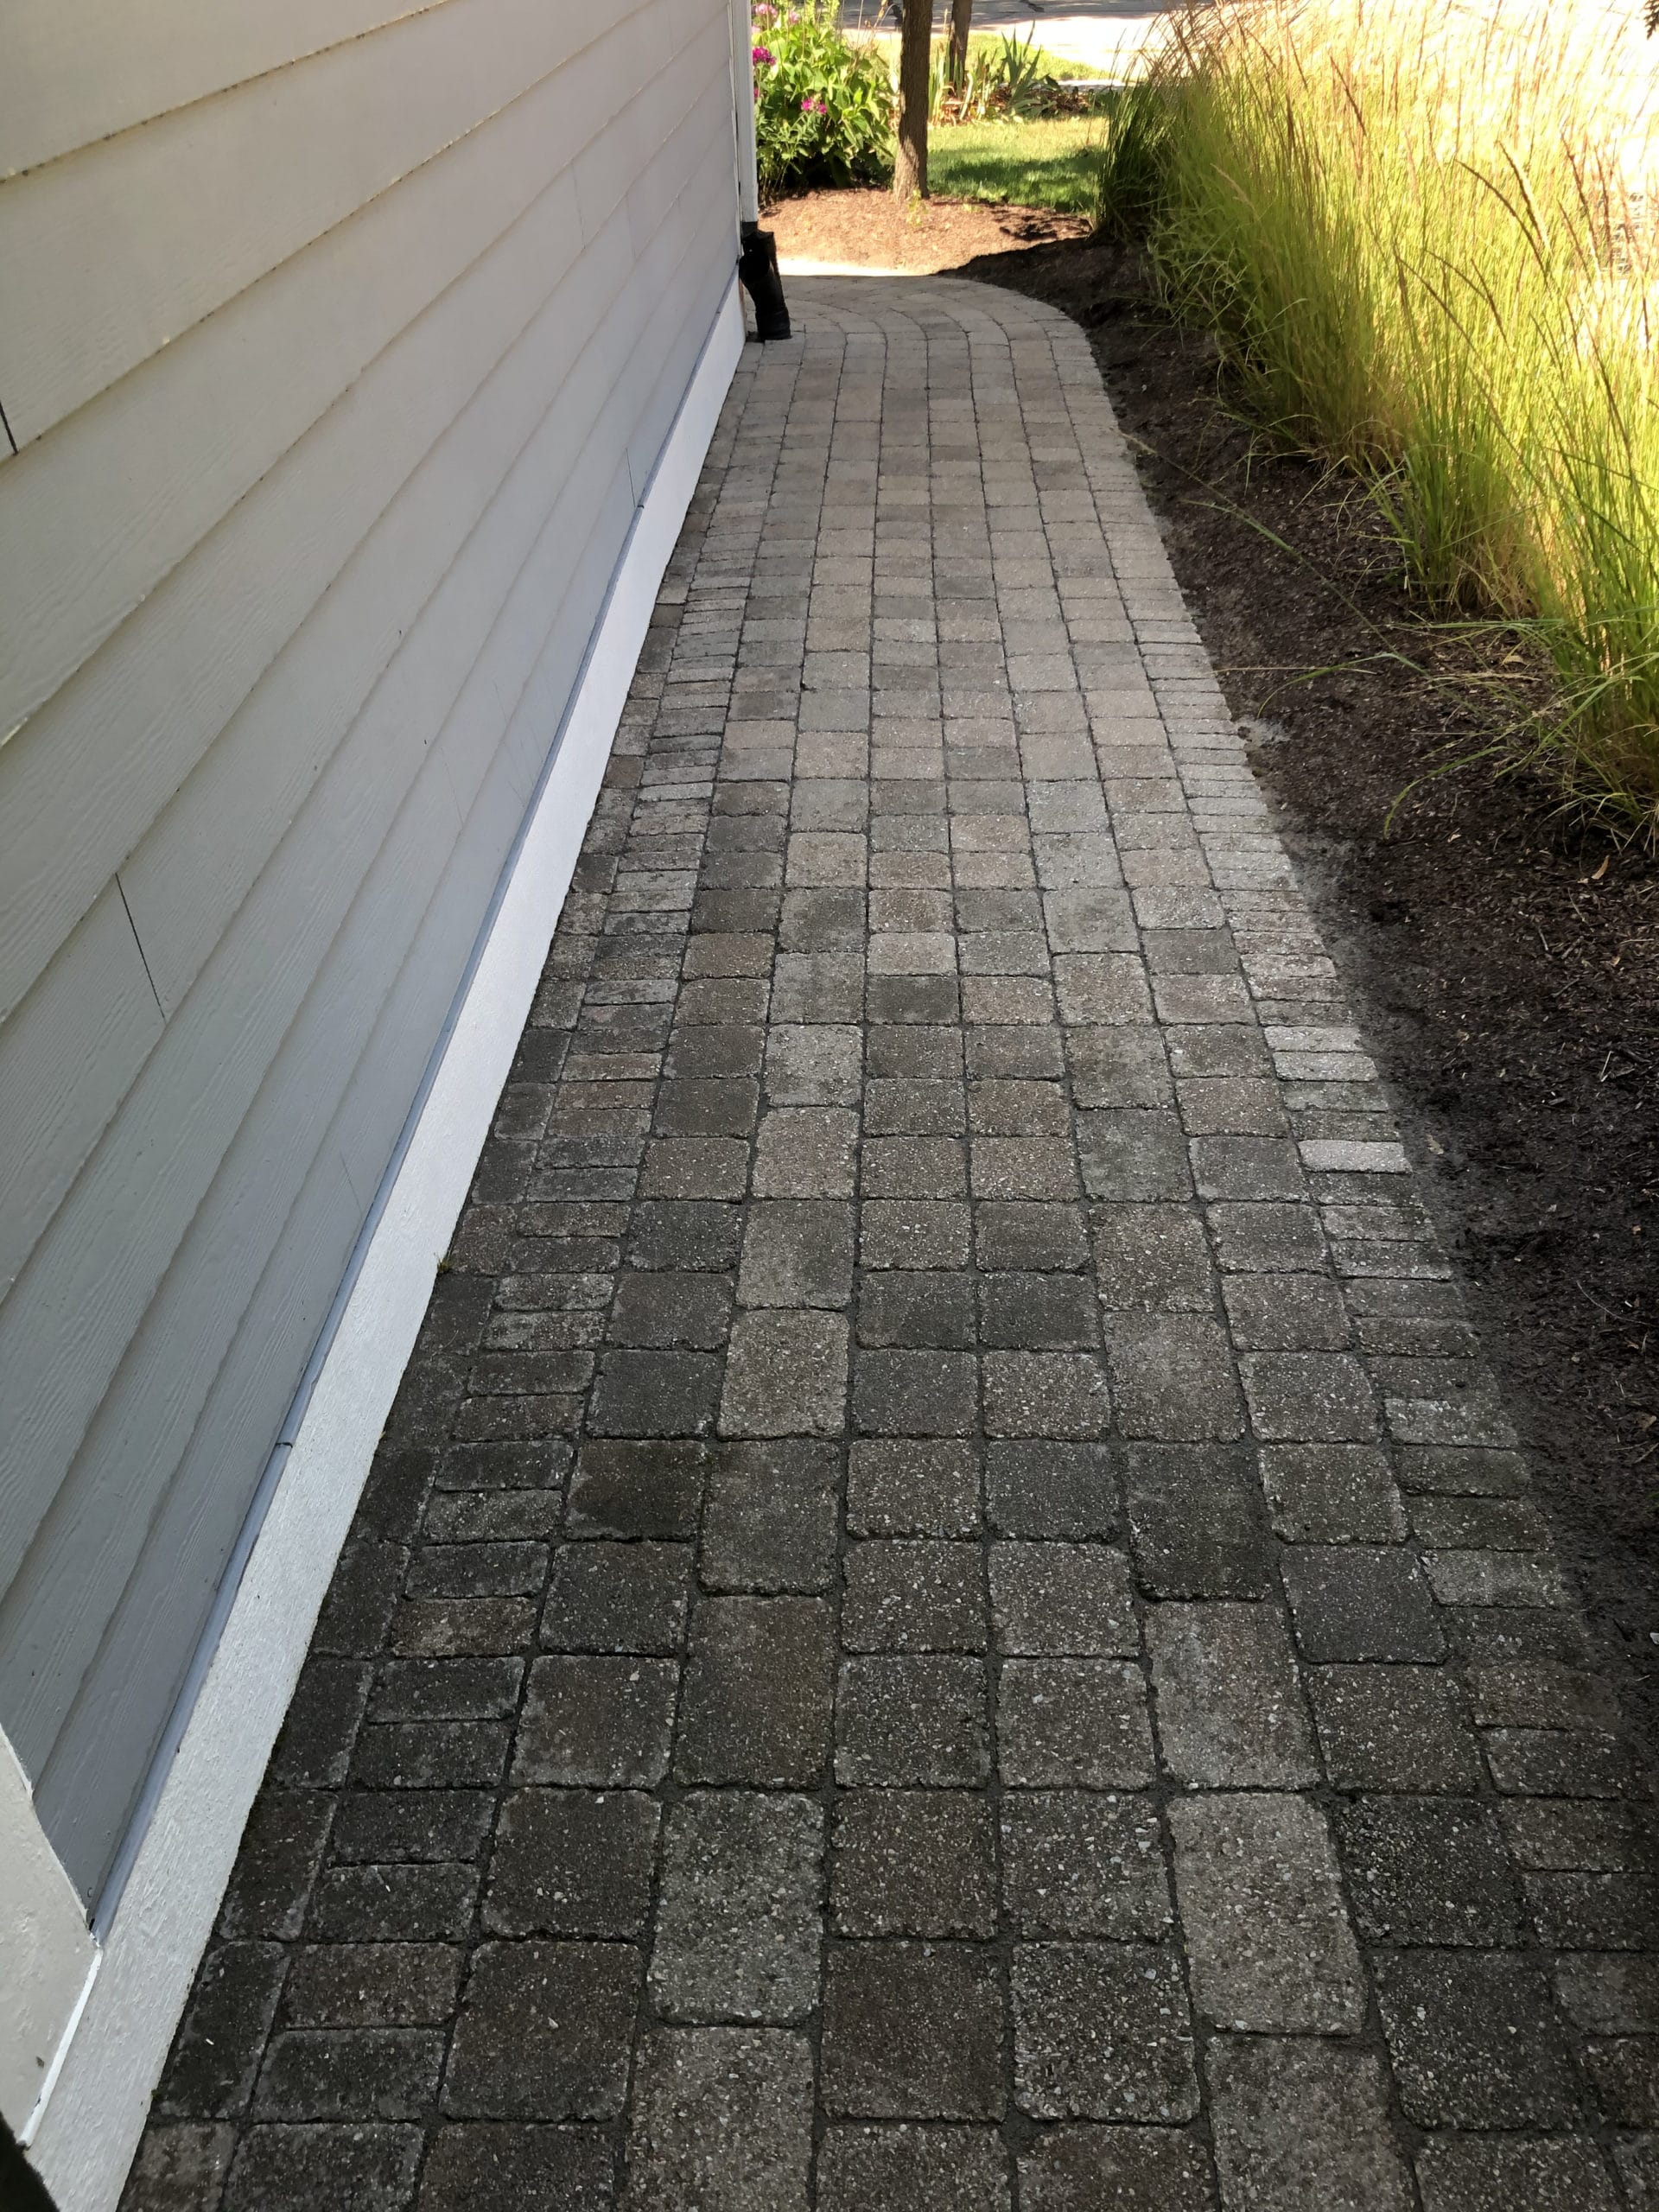 Image of paver brick sidewalk power washed by J & J Landscaping, LLC in Metro Detroit, Michigan